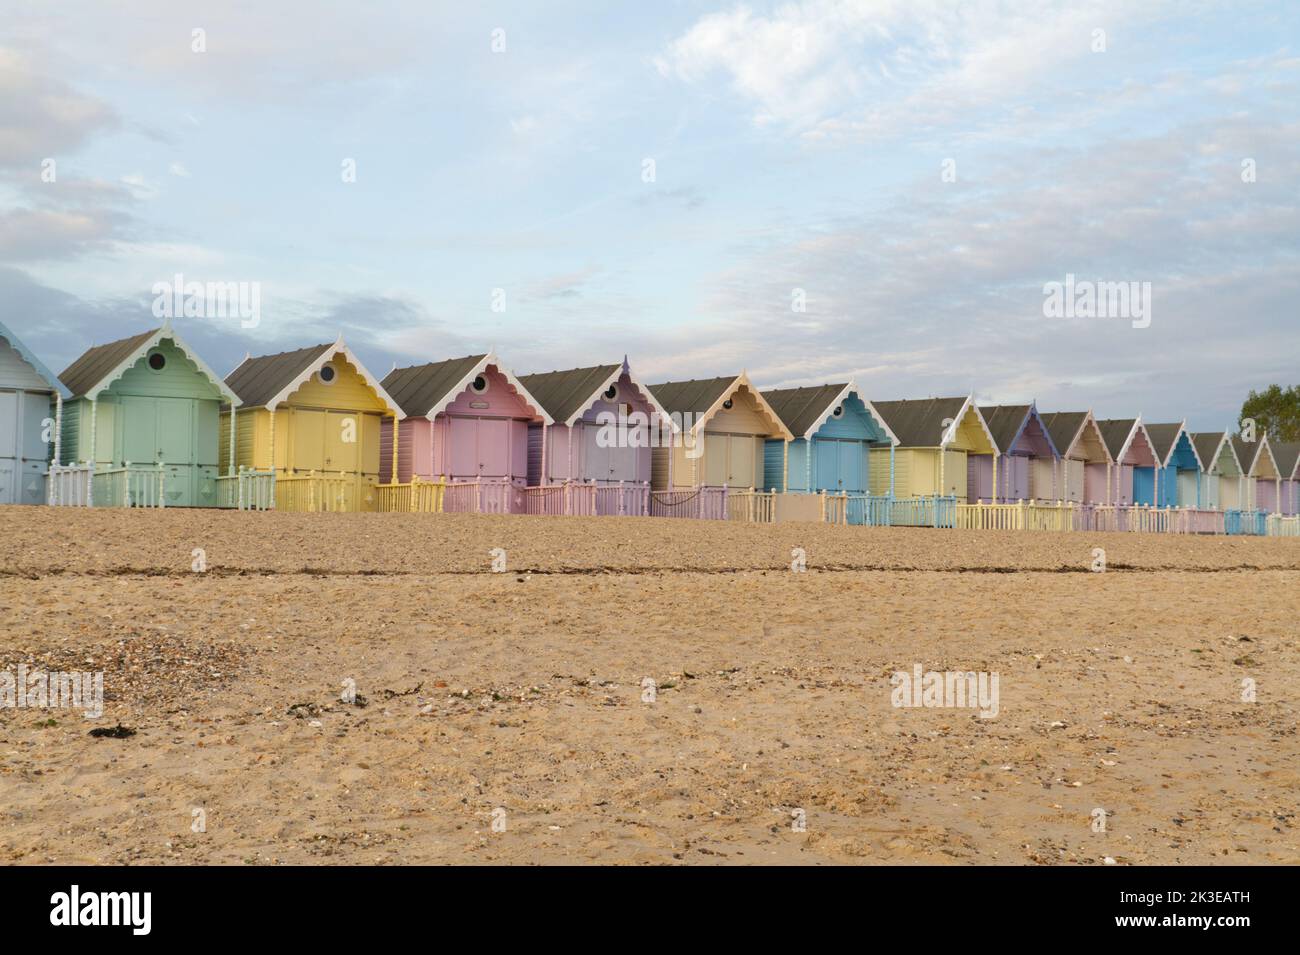 Die Strandhütten in West Mersea auf Mersea Island in Essex, eine Reihe sehr hübscher pastellfarbener Hütten, die bei Einheimischen und Besuchern sehr beliebt sind Stockfoto